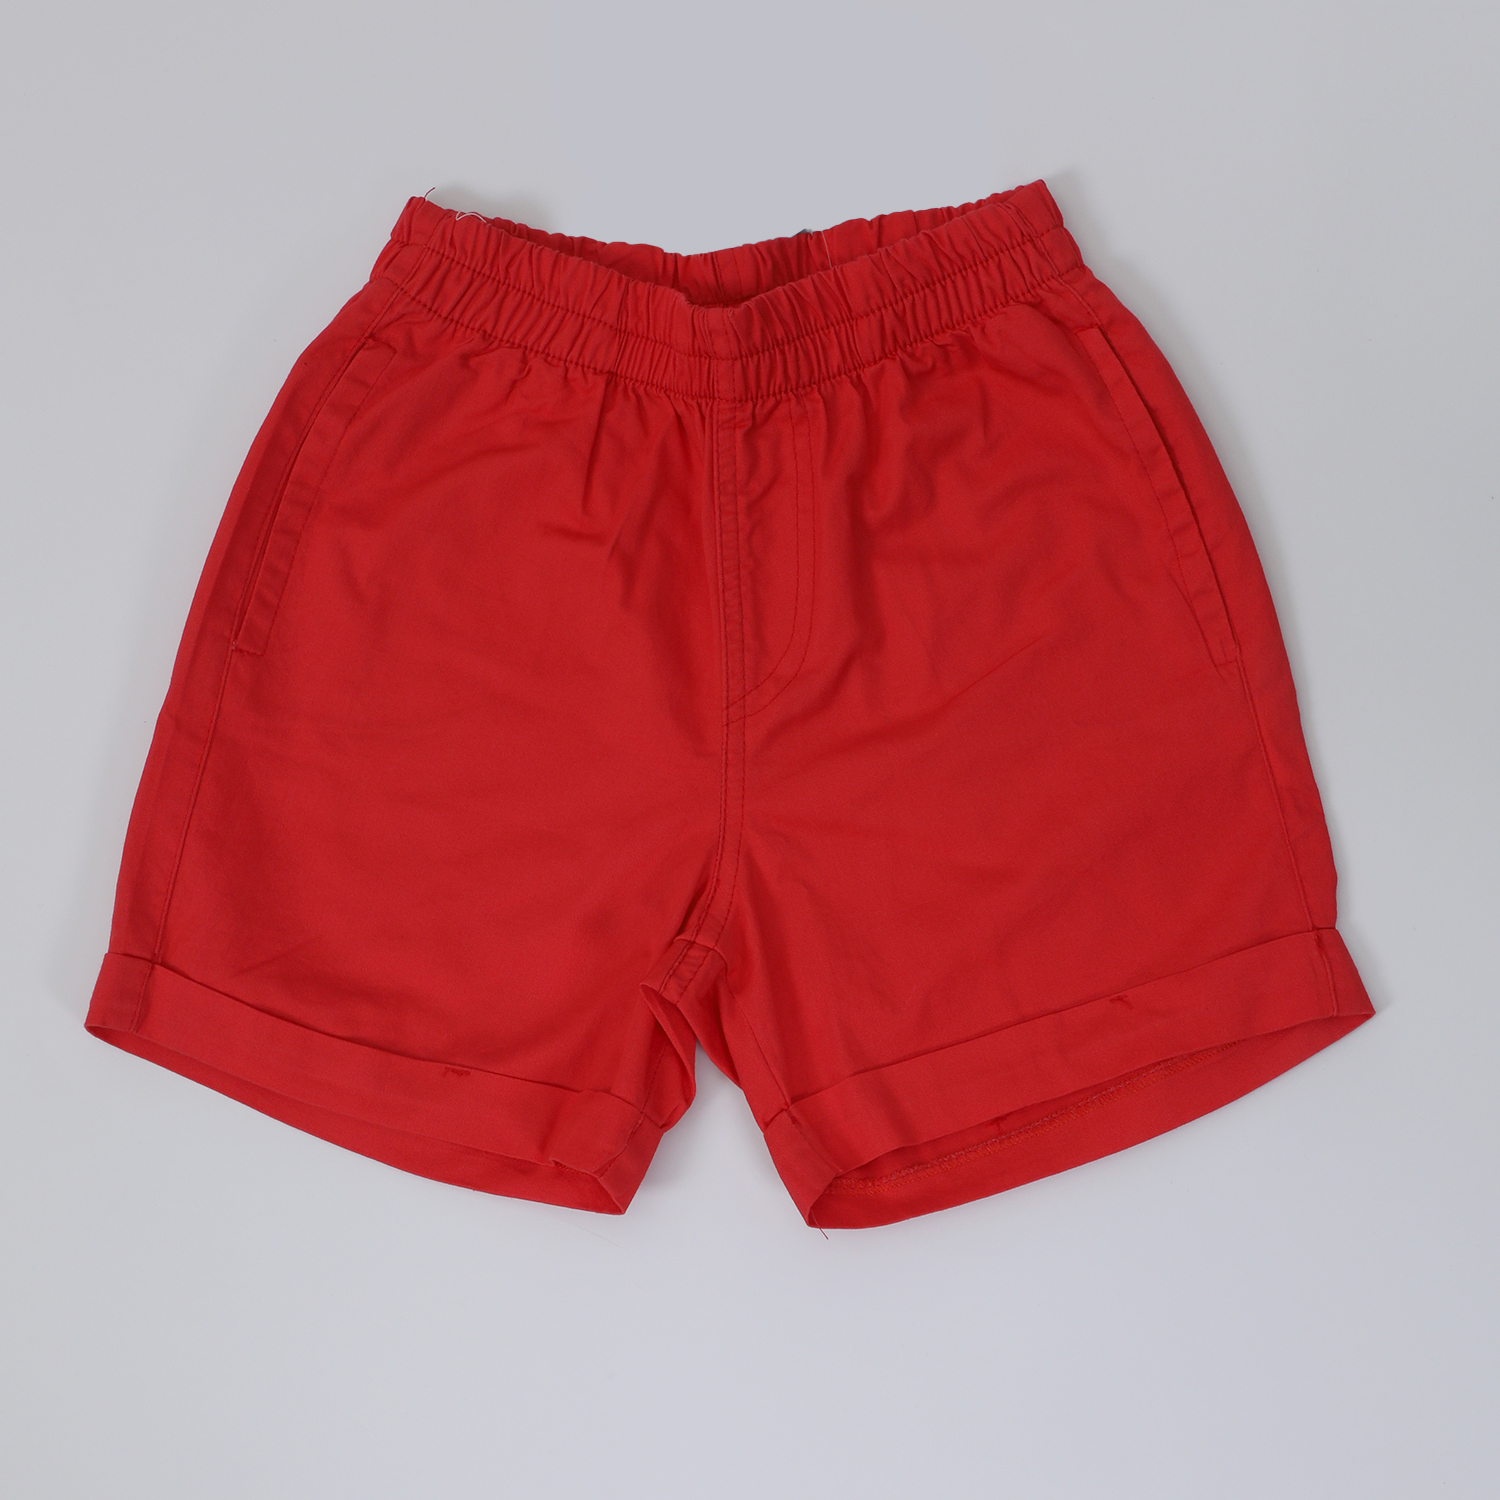 Παιδικά/Boys/Ρούχα/Σορτς-Βερμούδες SAM 0-13 - Παιδική βερμούδα SAM 0-13 κόκκινη